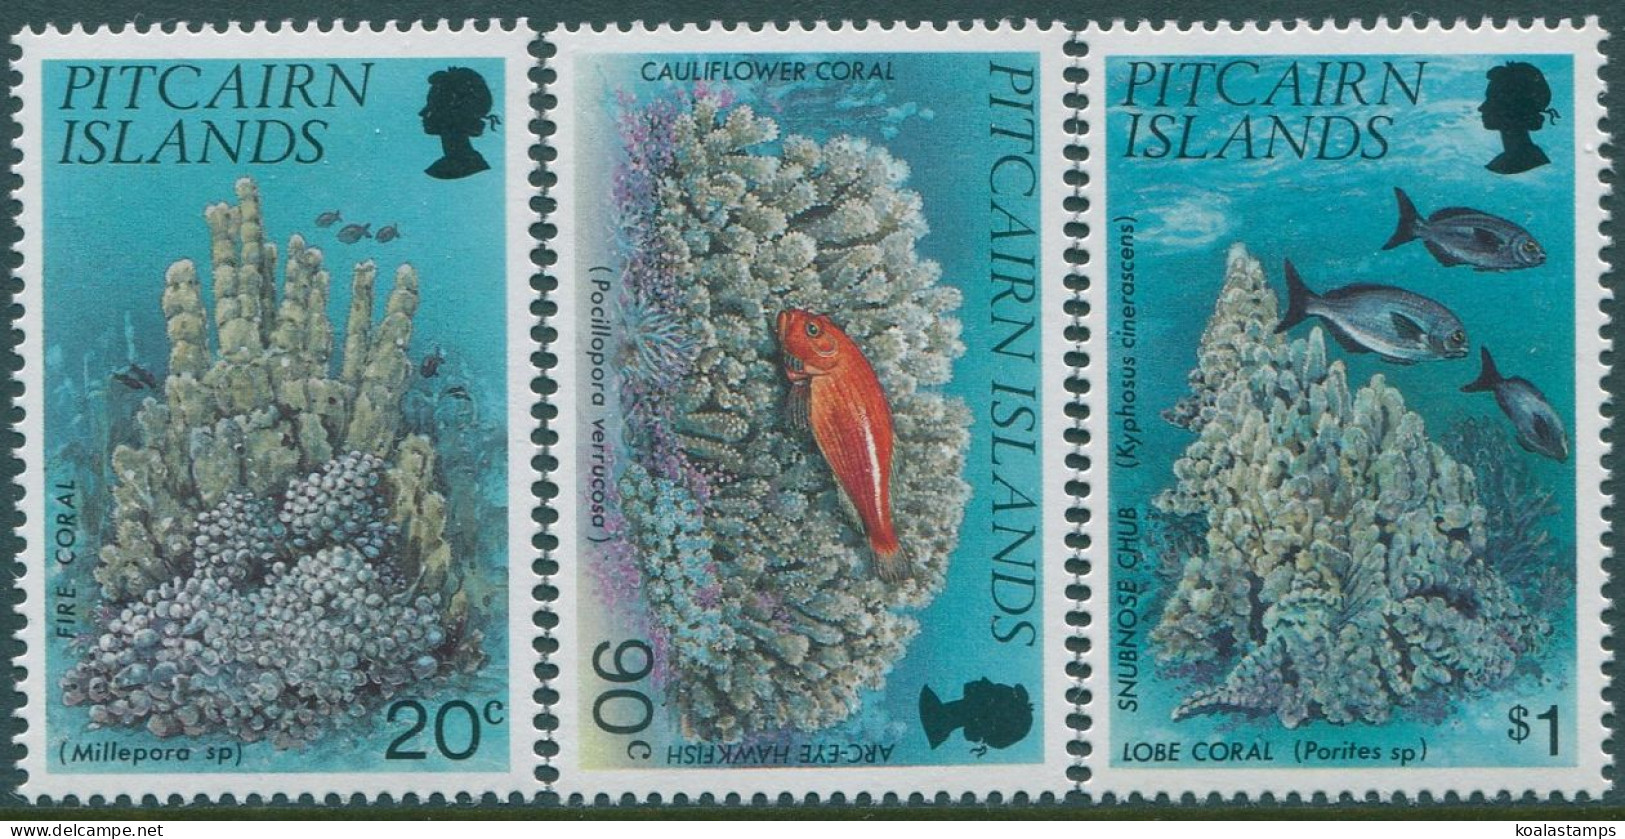 Pitcairn Islands 1994 SG454-456 Corals Set MNH - Pitcairn Islands